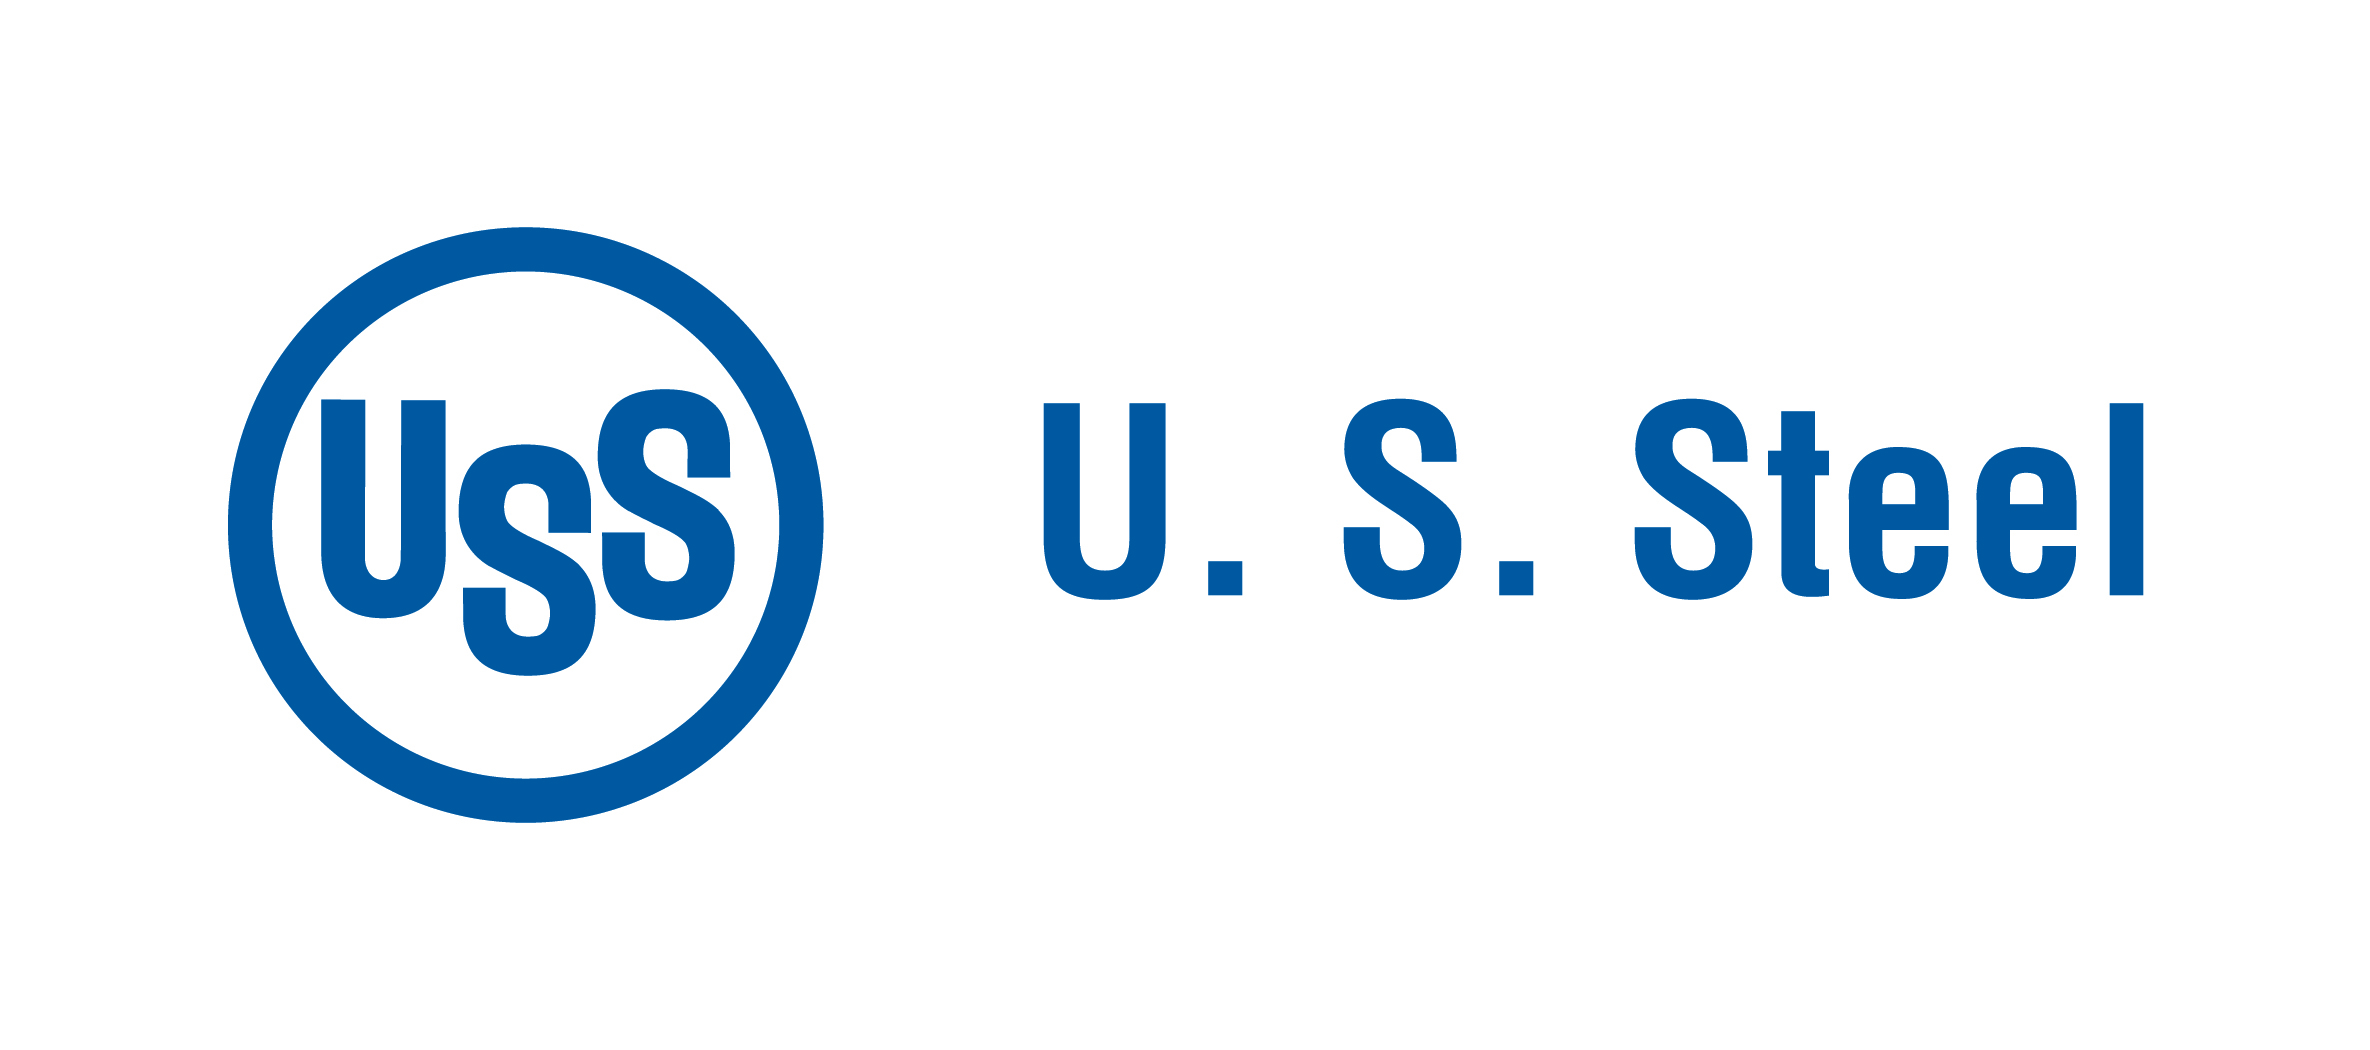 us steel logo